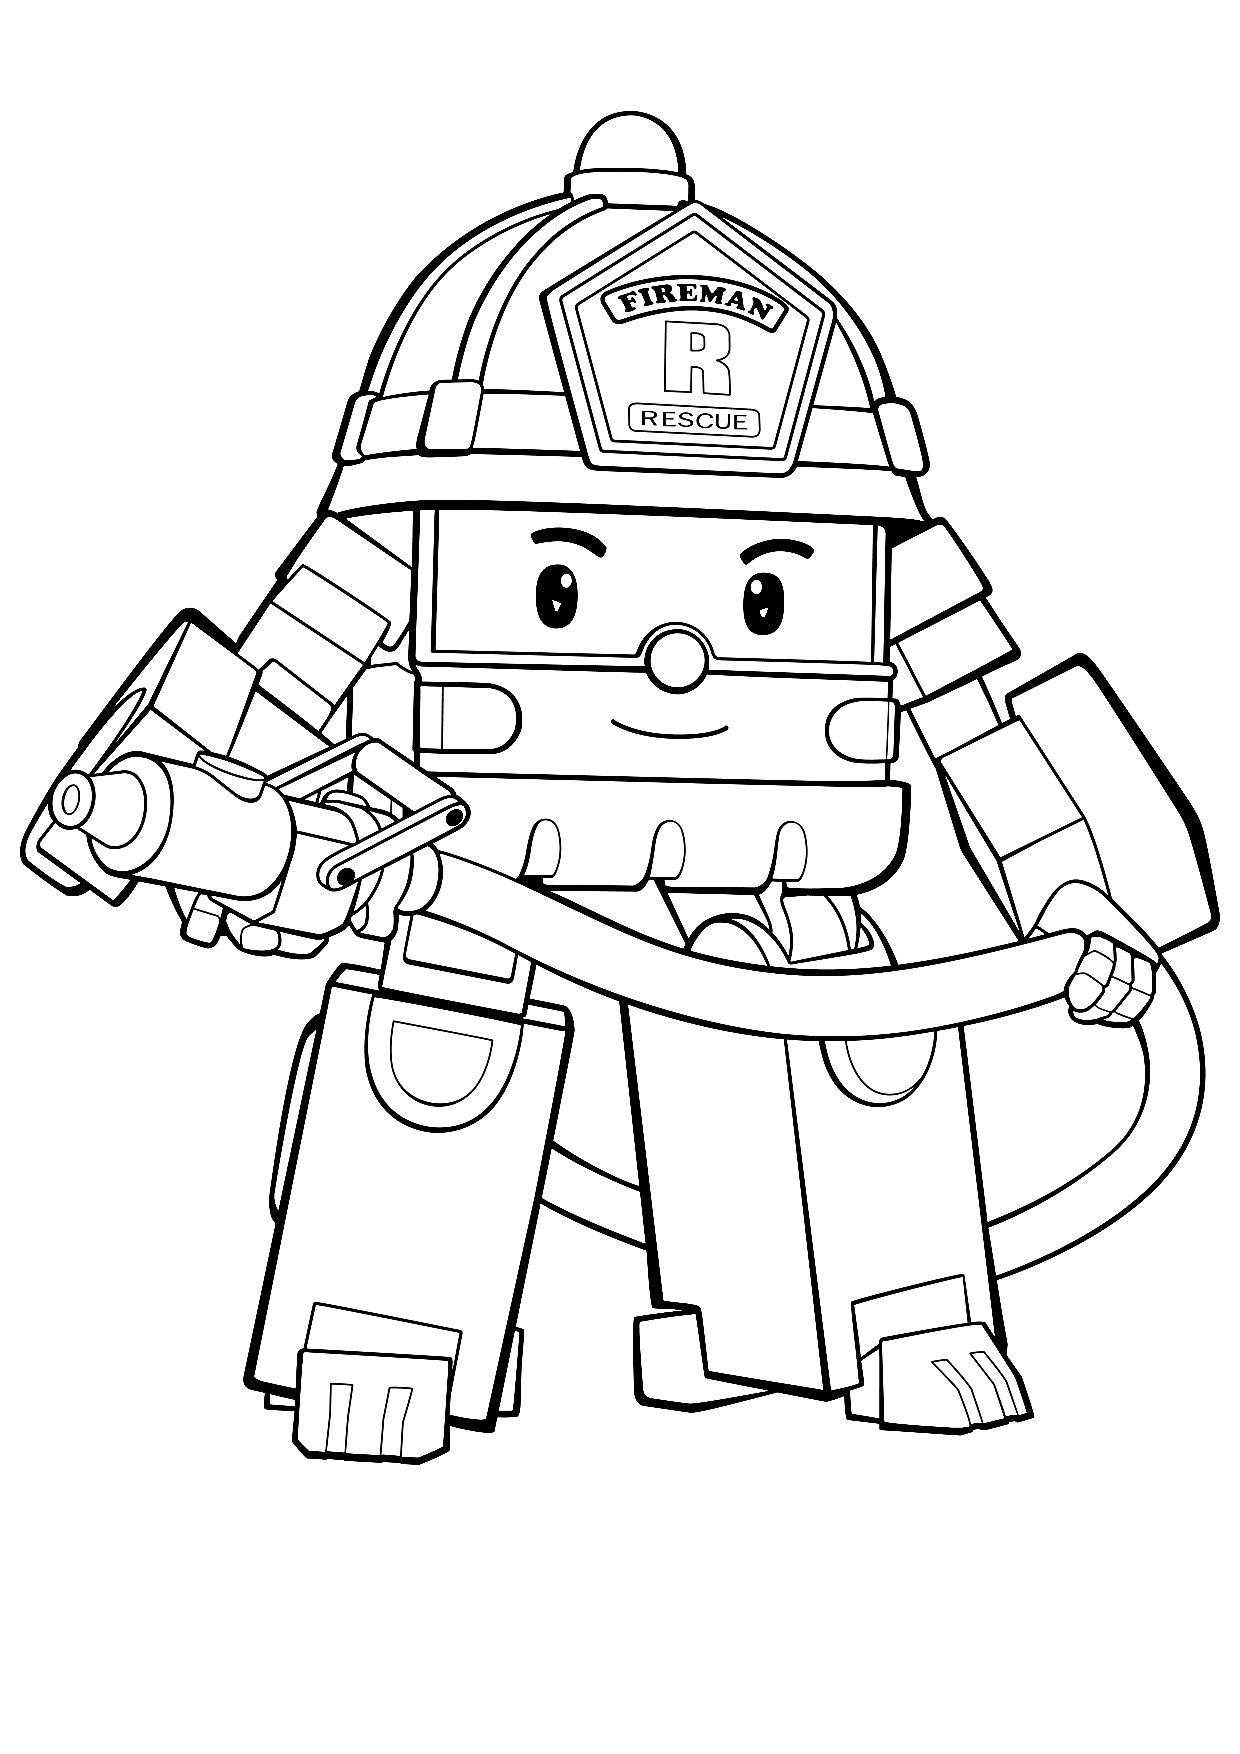 Раскраска Поли Робокар пожарный с пожарным шлангом и каской